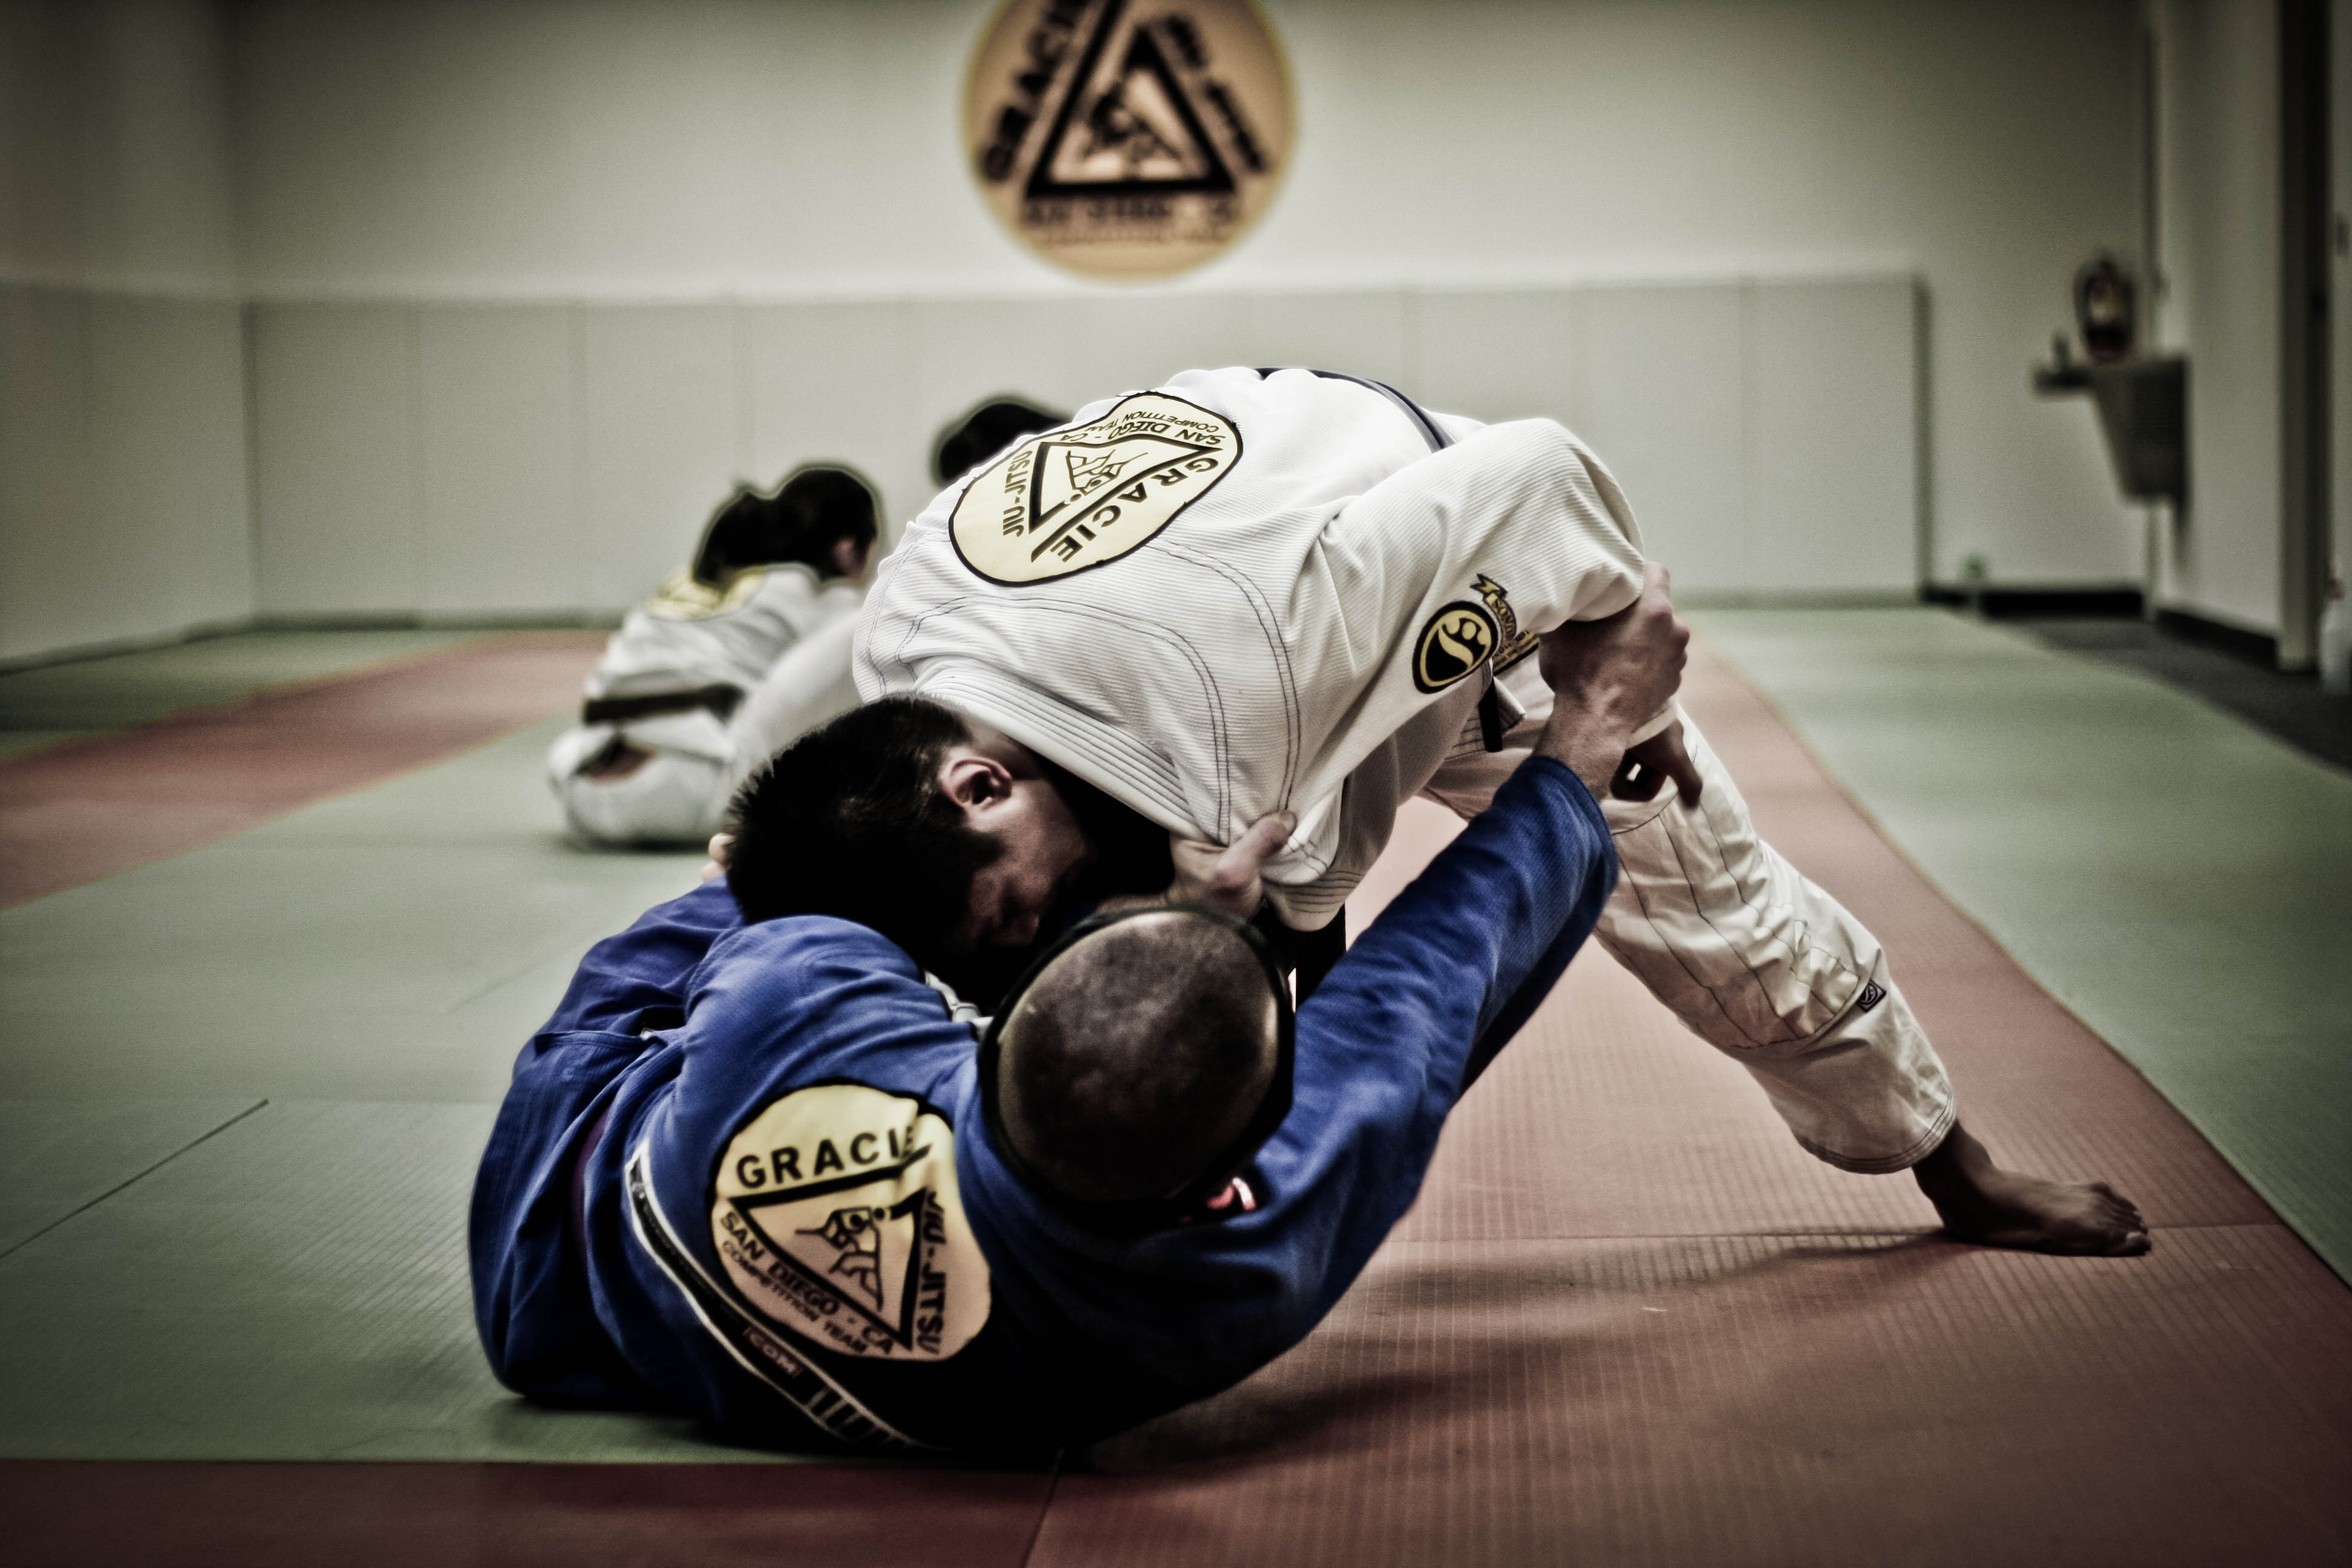 Jiu Jitsu: Taking Time Off From Training